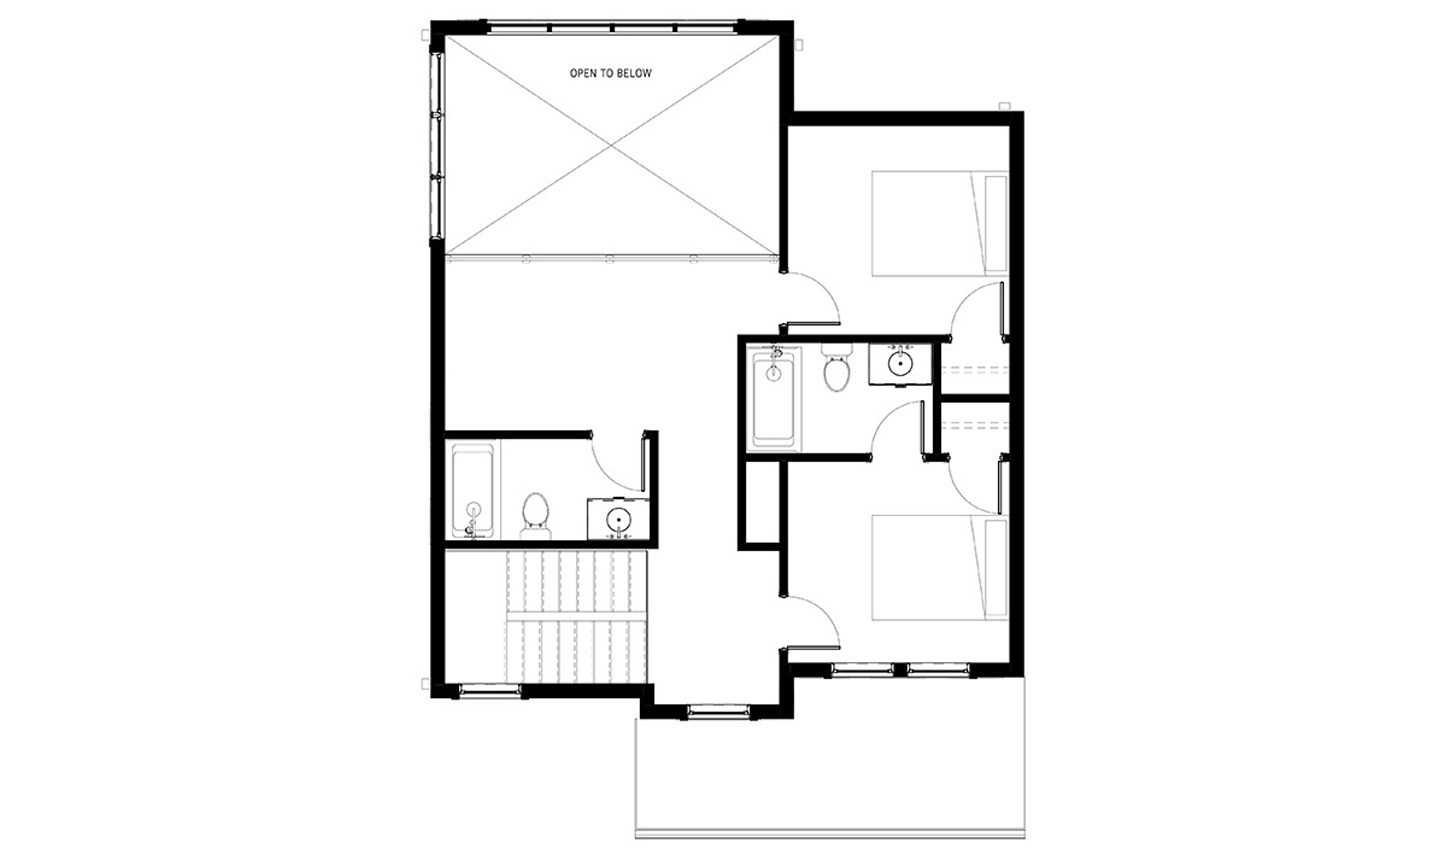 Floor plan of the 3 bedroom upper level floor plan